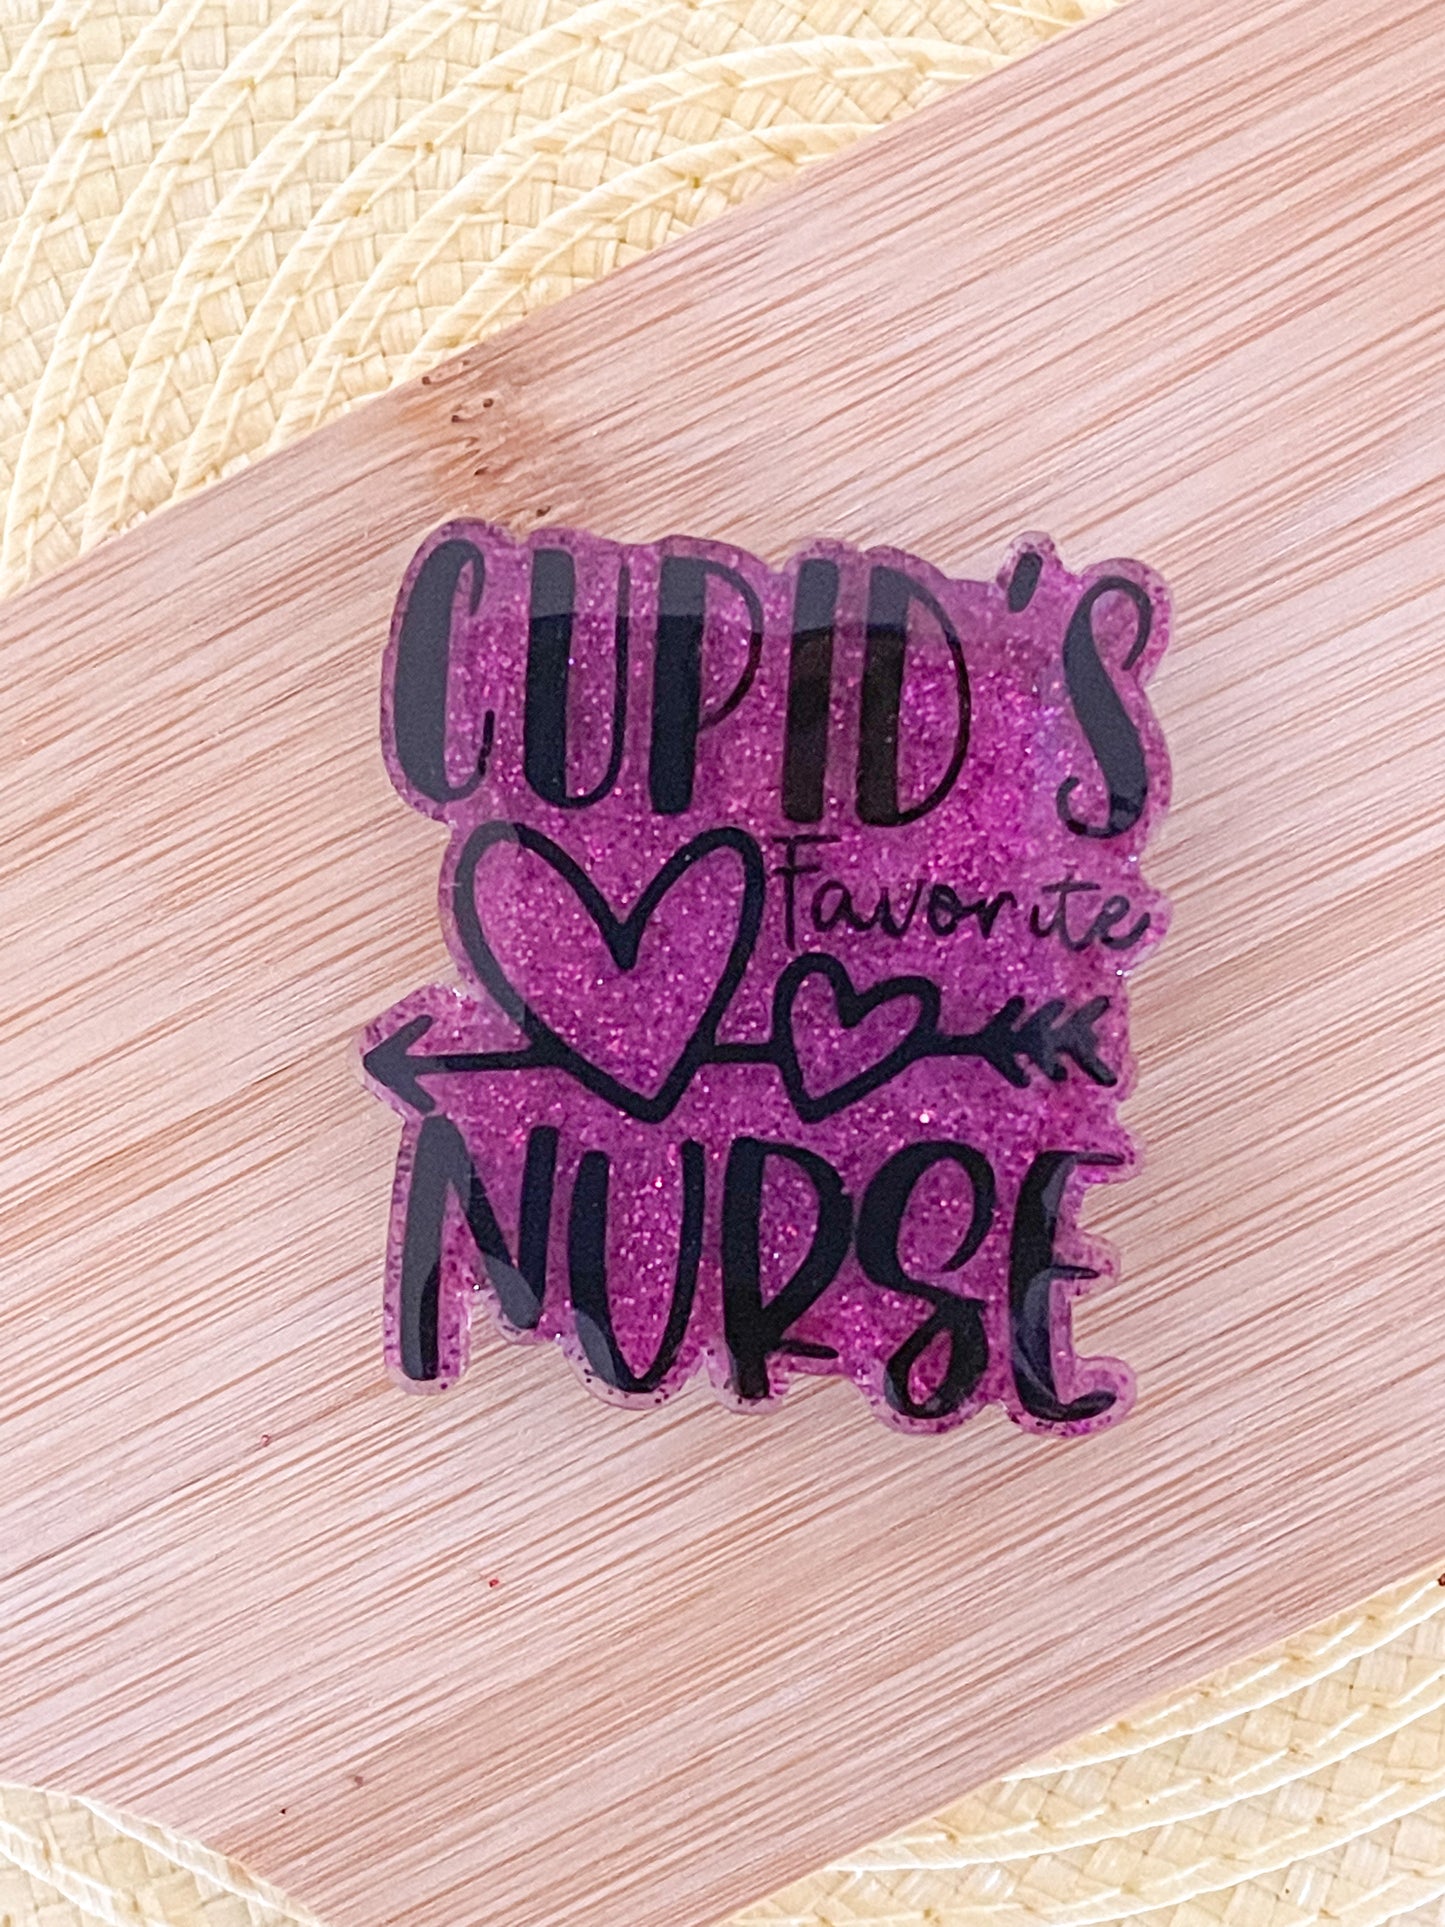 Cupid's Favorite Nurse - Badge Reel